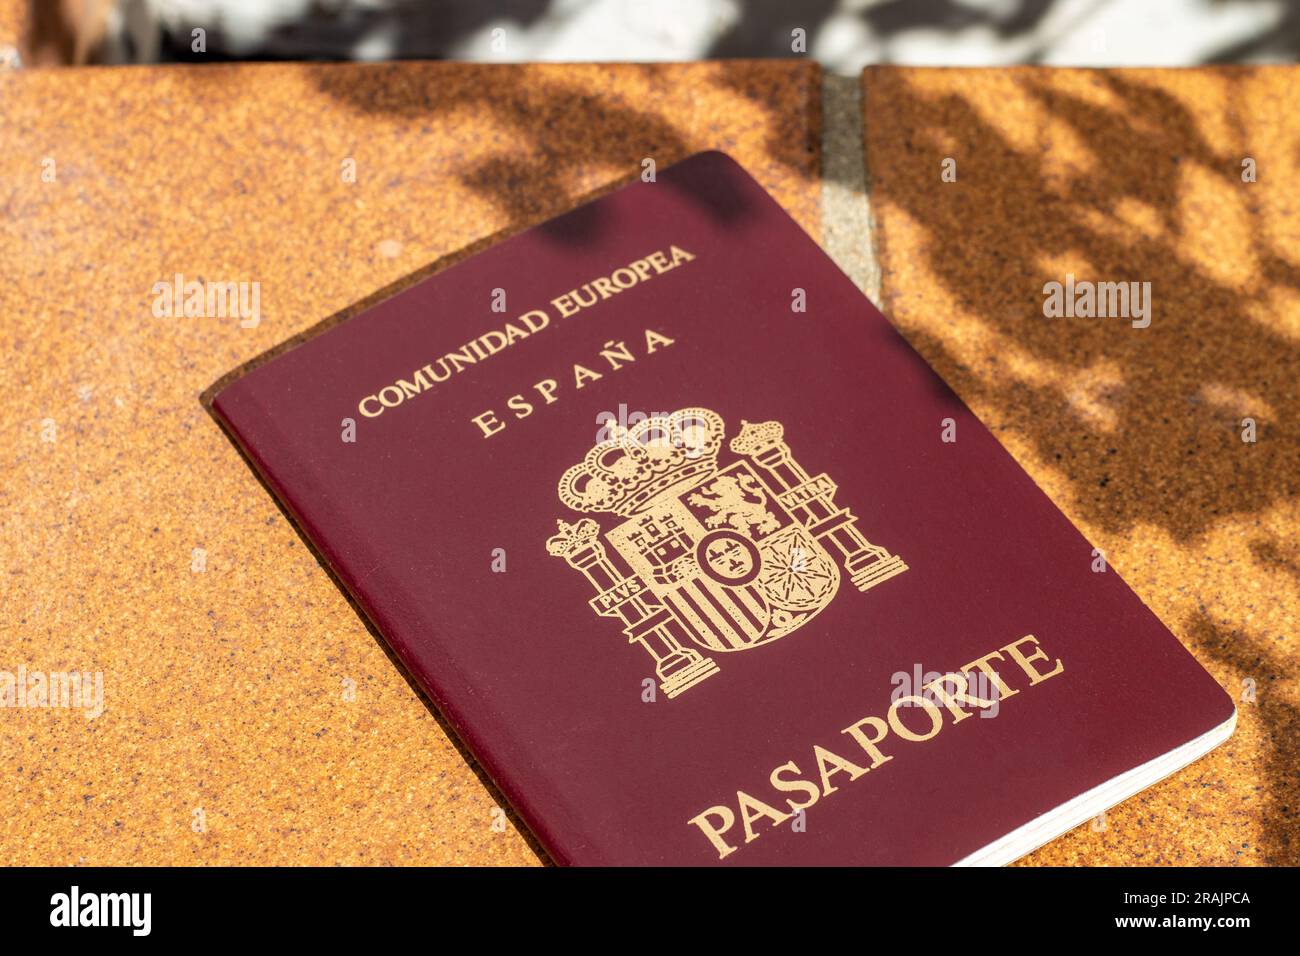 Pass der Europäischen Union, Spaniens, mit einer Hand gehalten, und man kann eine Sonnenbrille sehen Stockfoto